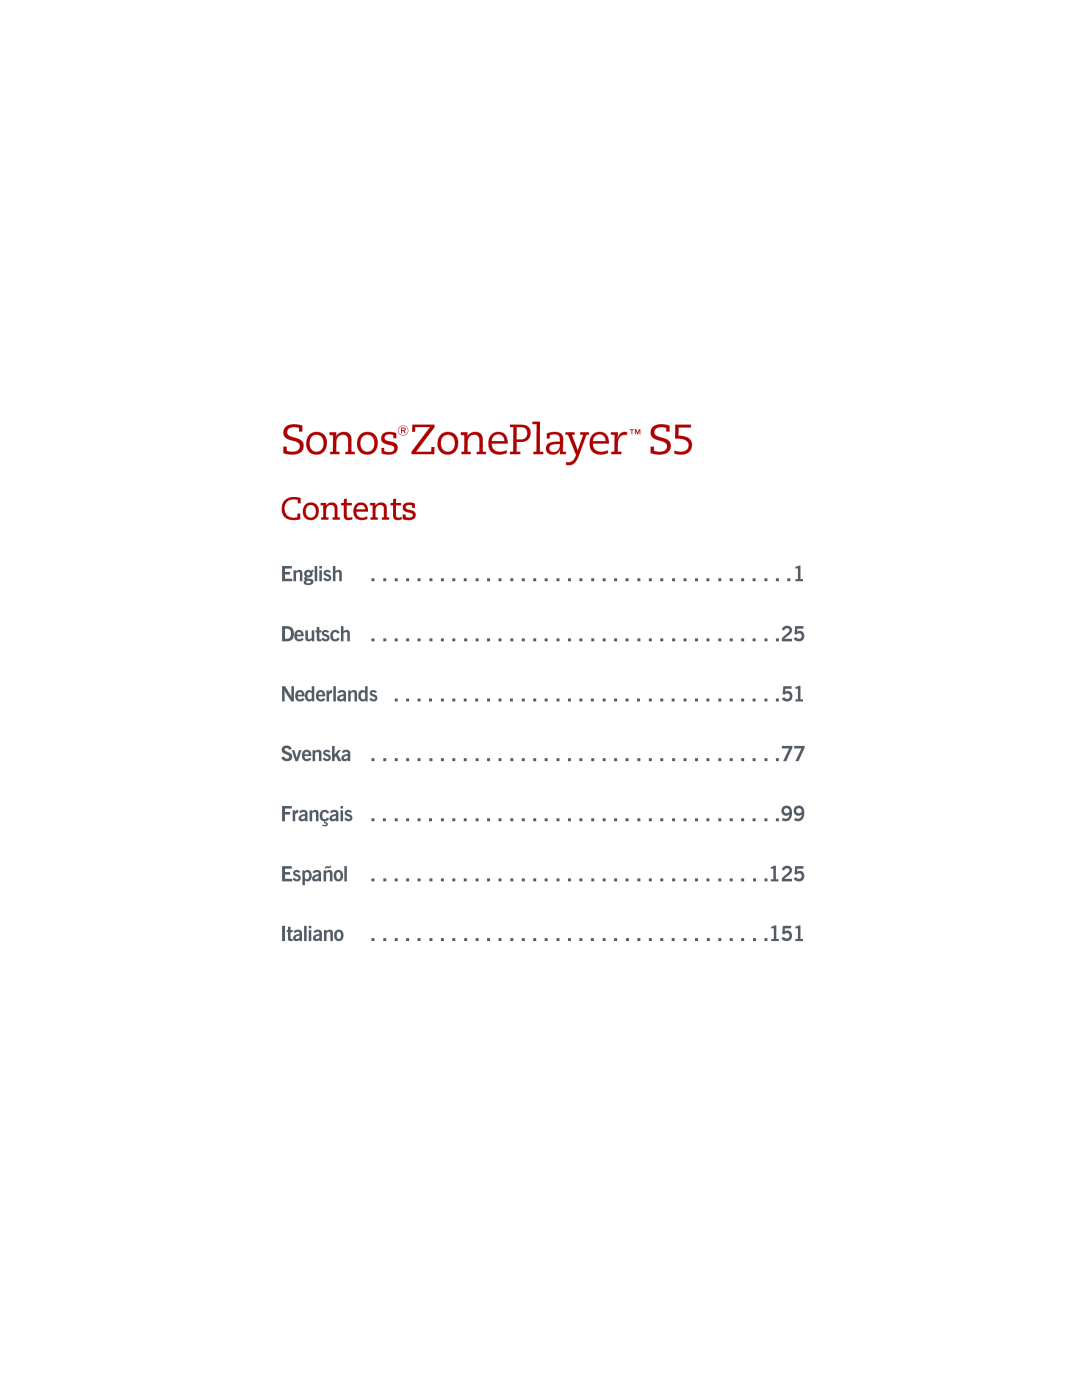 Sonos manual Contents, SonosZonePlayer S5 